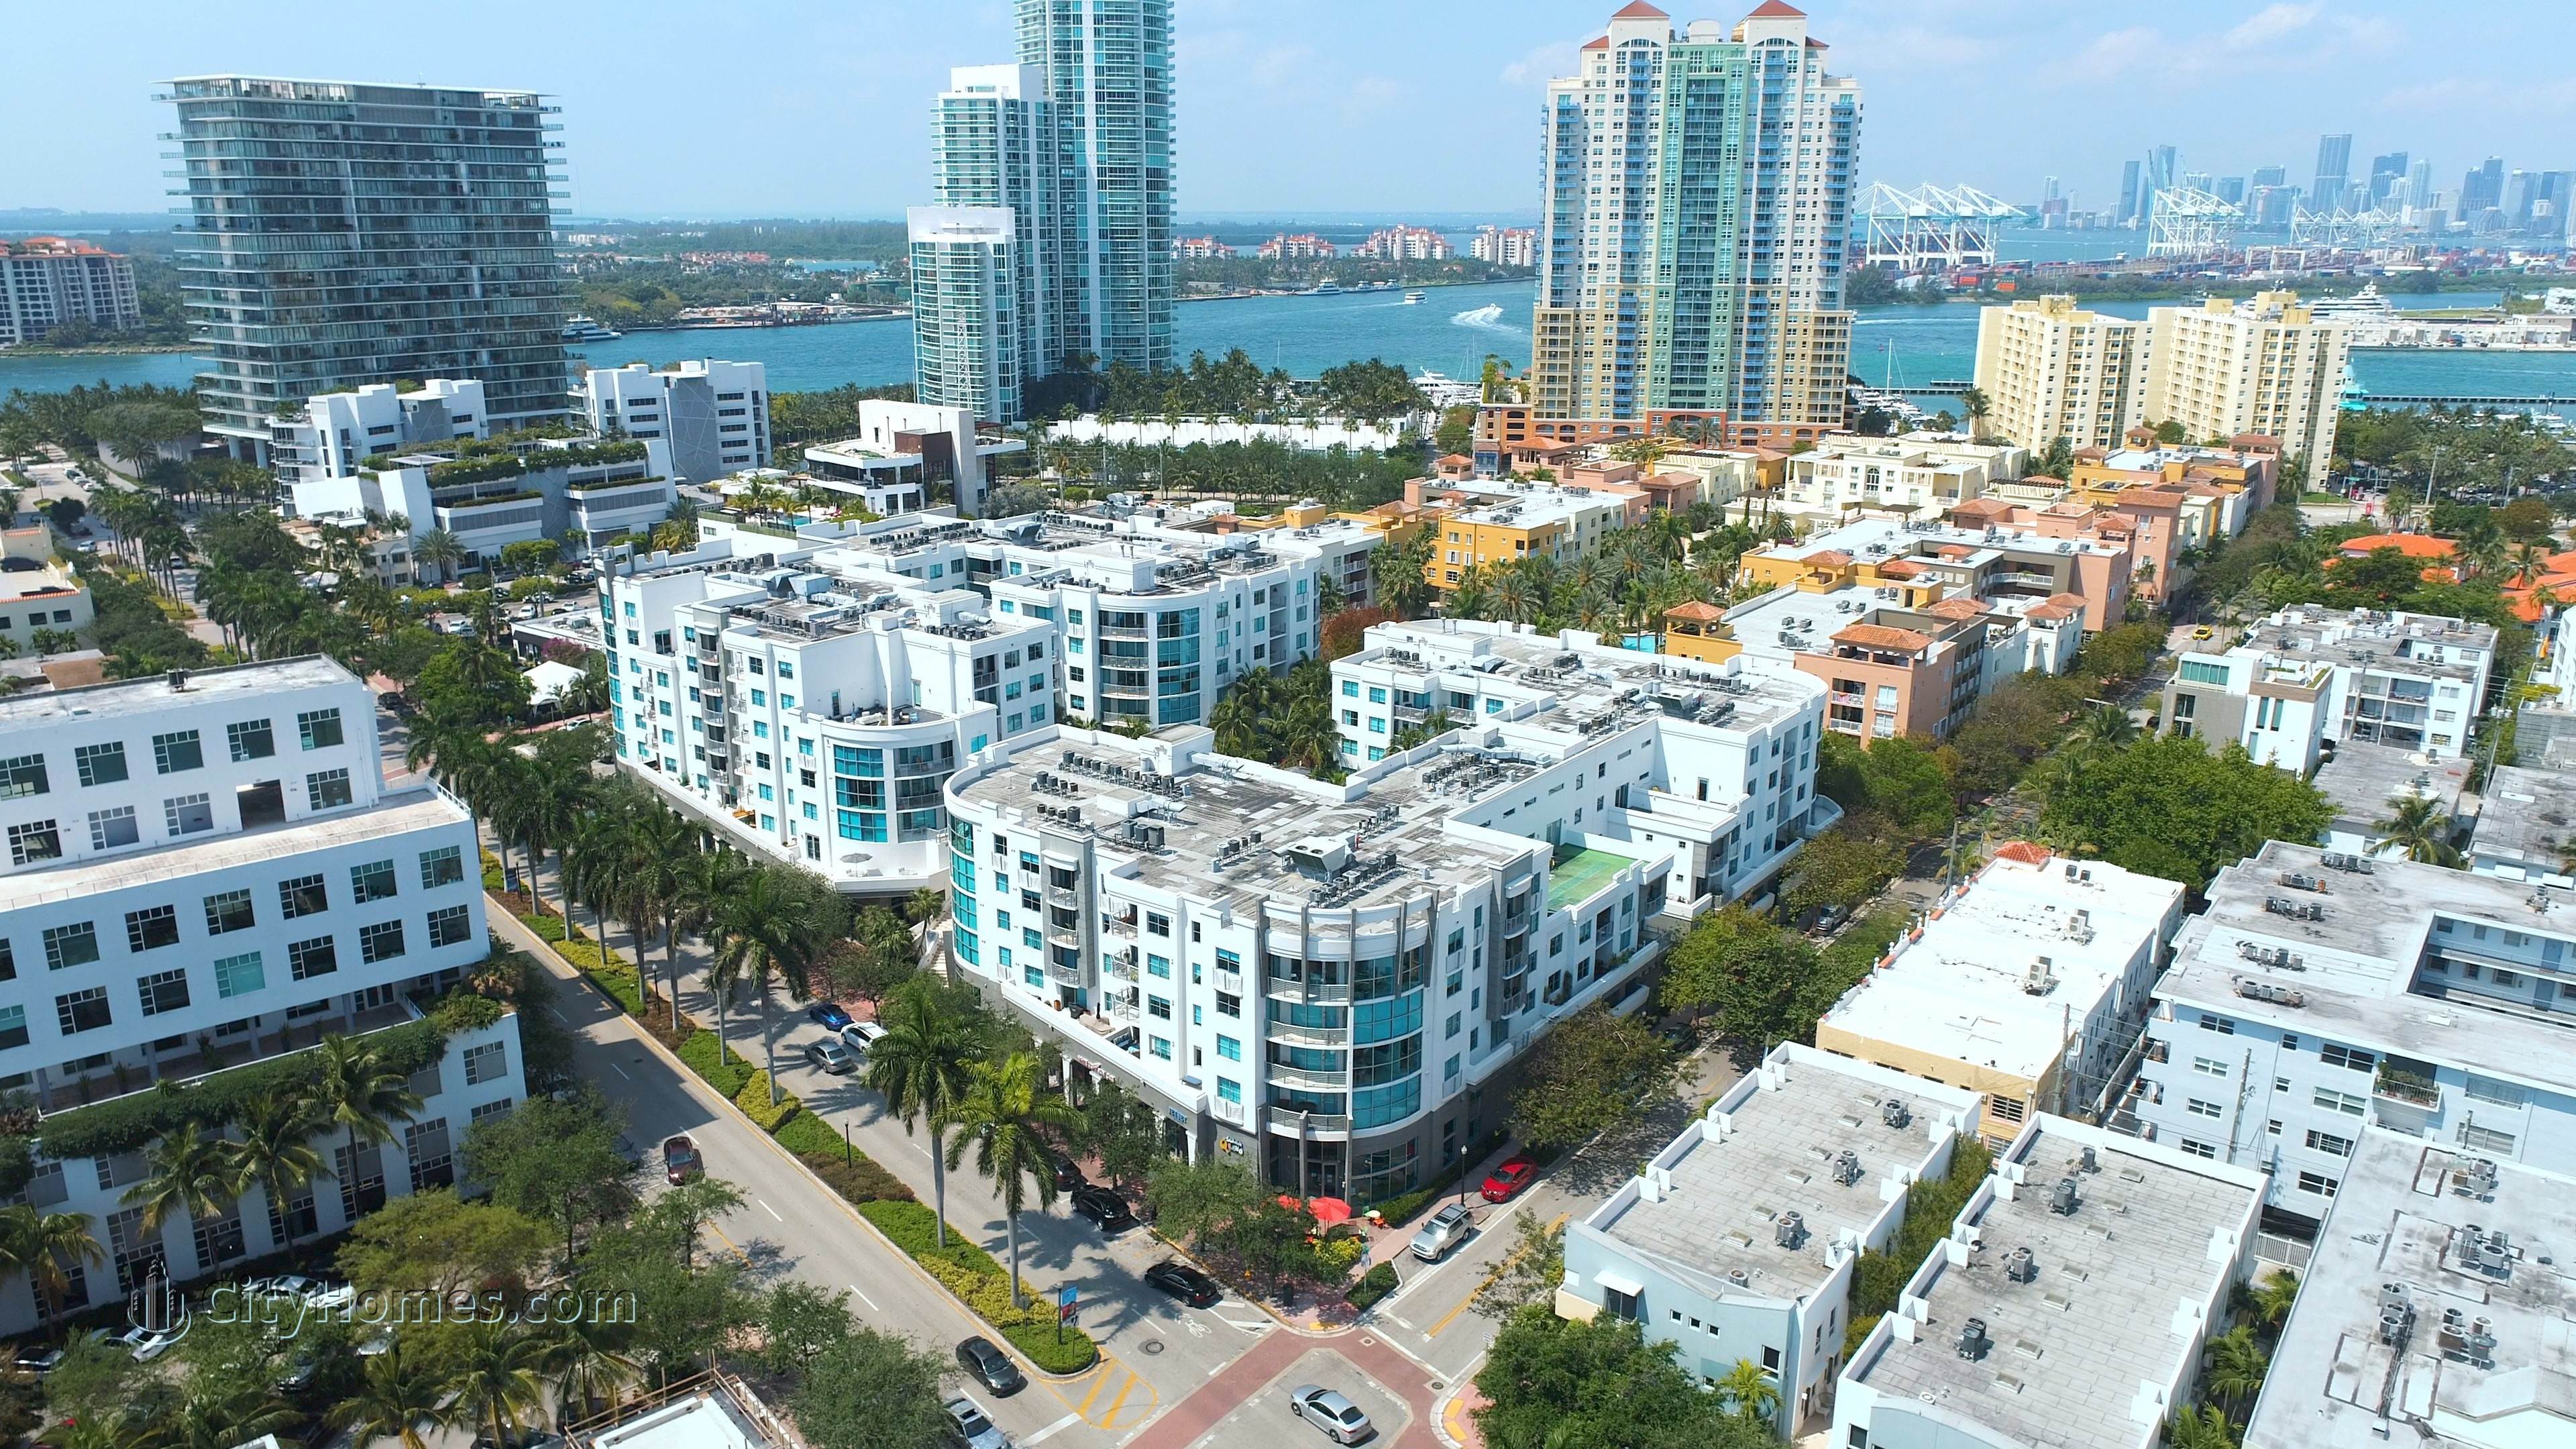 3. COSMOPOLITAN TOWERS edificio en 110 Washington Ave, South of Fifth, Miami Beach, FL 33139